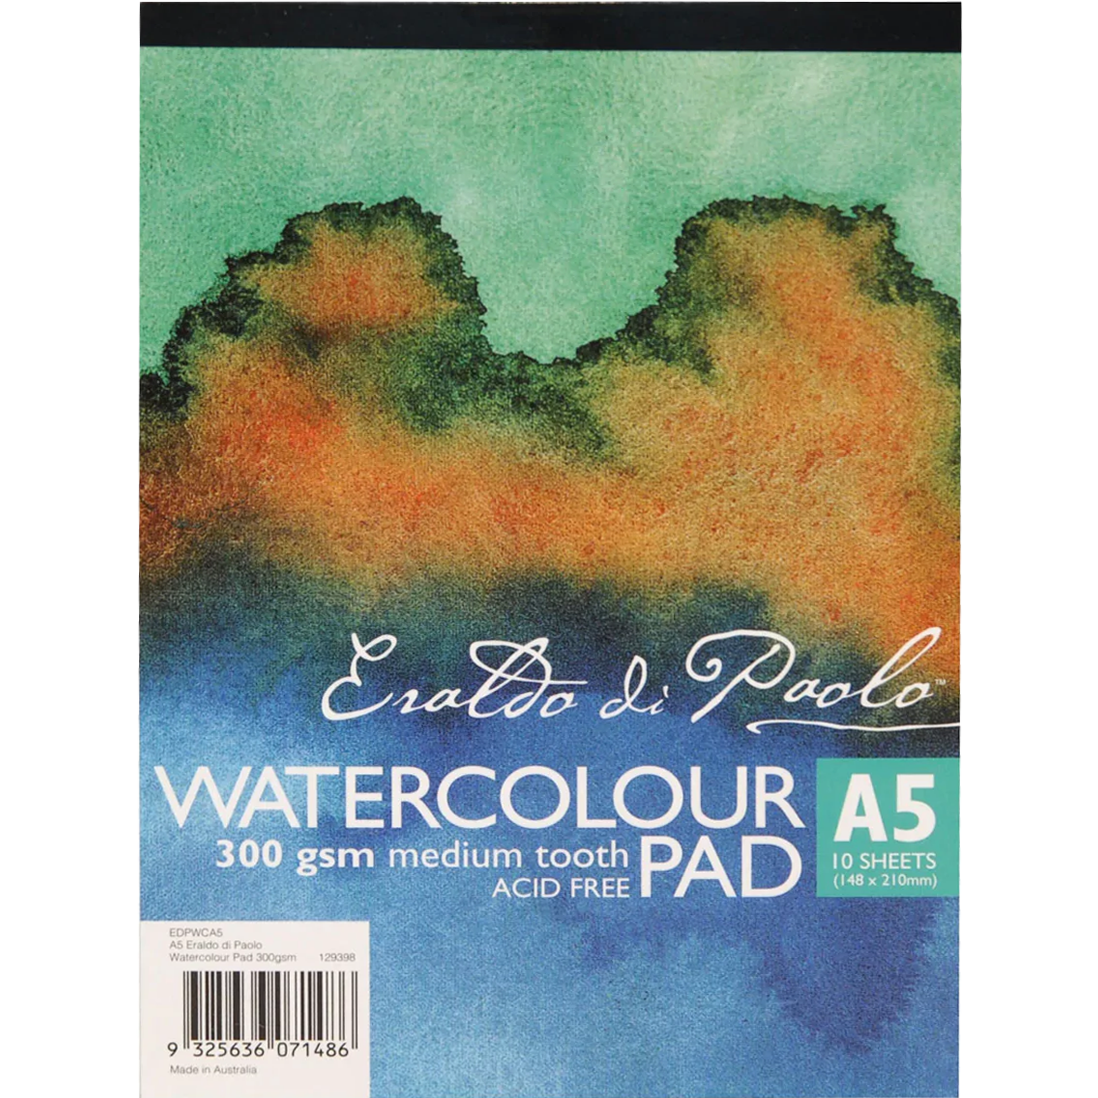 Image of Eraldo Di Paolo A5 Watercolour Pad Cold Pressed 300gsm 10 Sheets